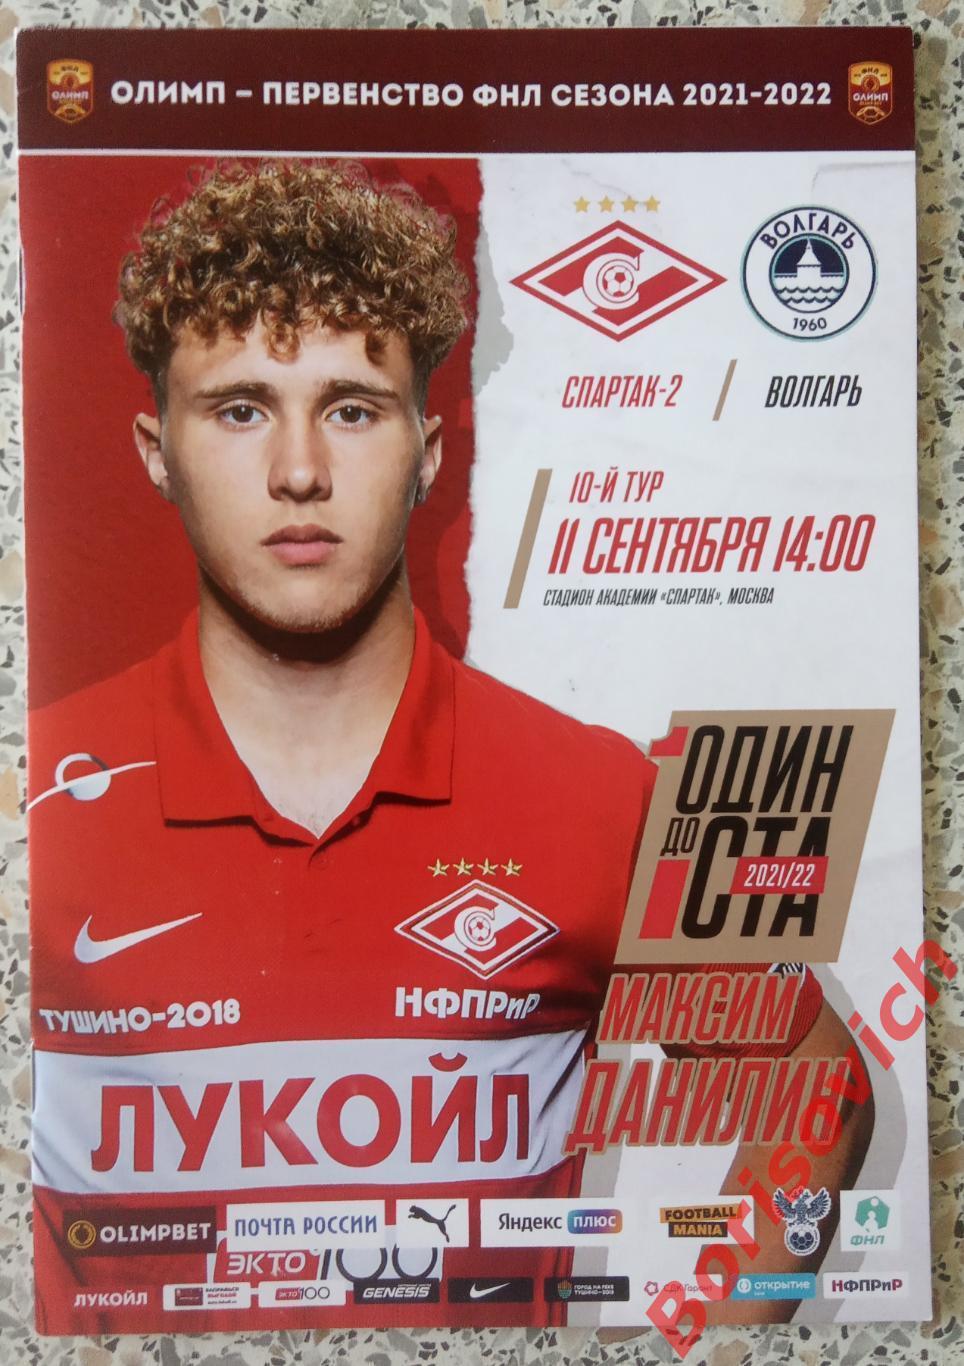 Спартак -2 Москва - Волгарь Астрахань 11-09-2021